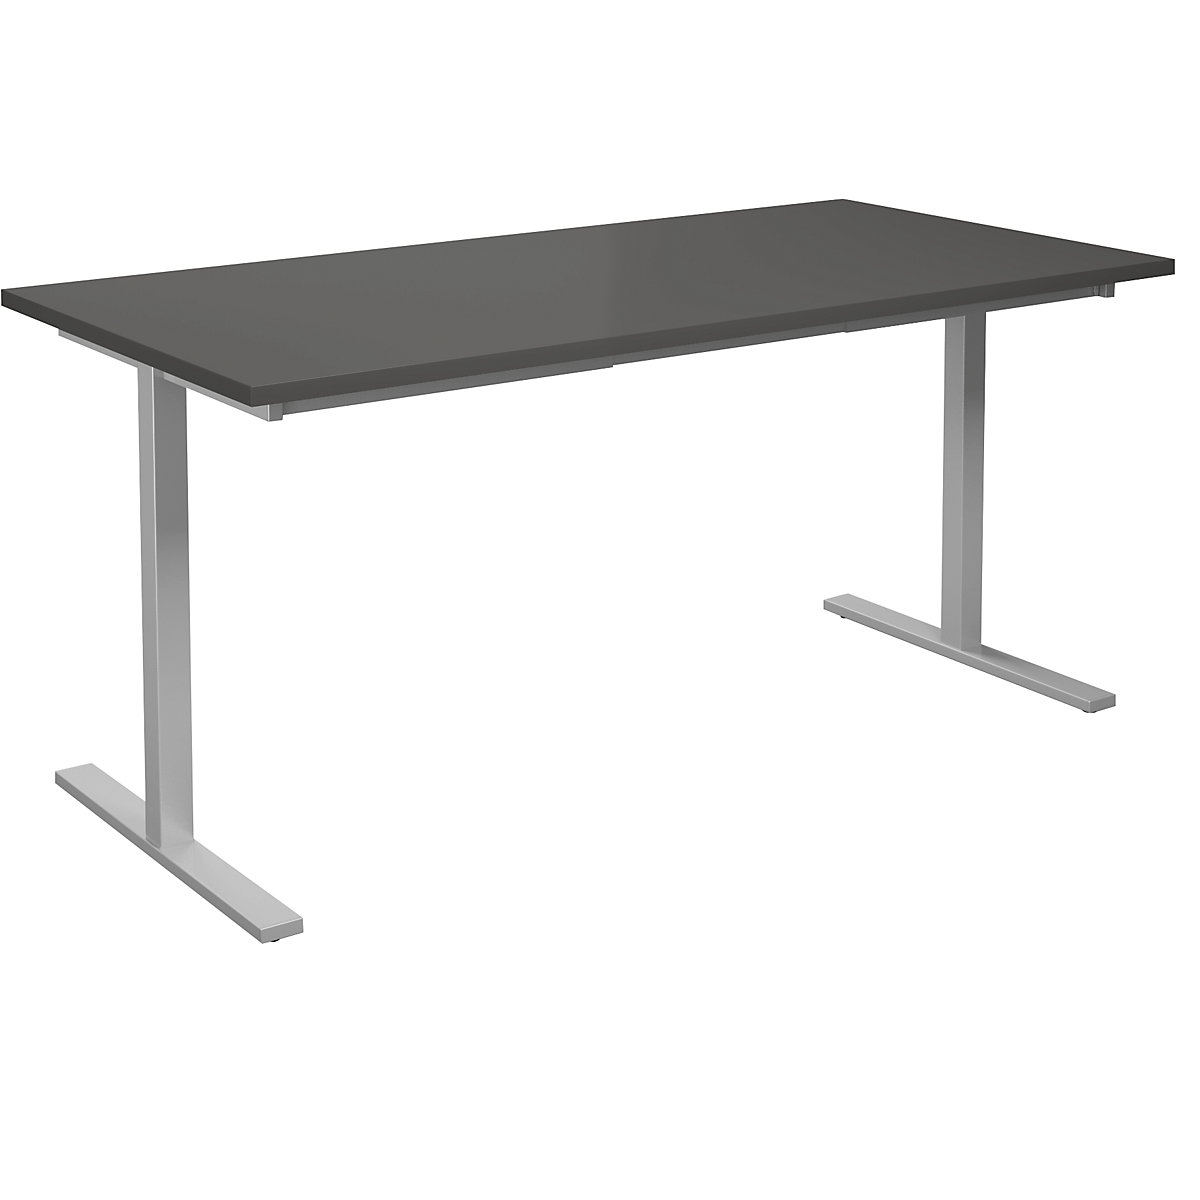 DUO-T multi-purpose desk, straight tabletop, WxD 1600 x 800 mm, dark grey, silver-6